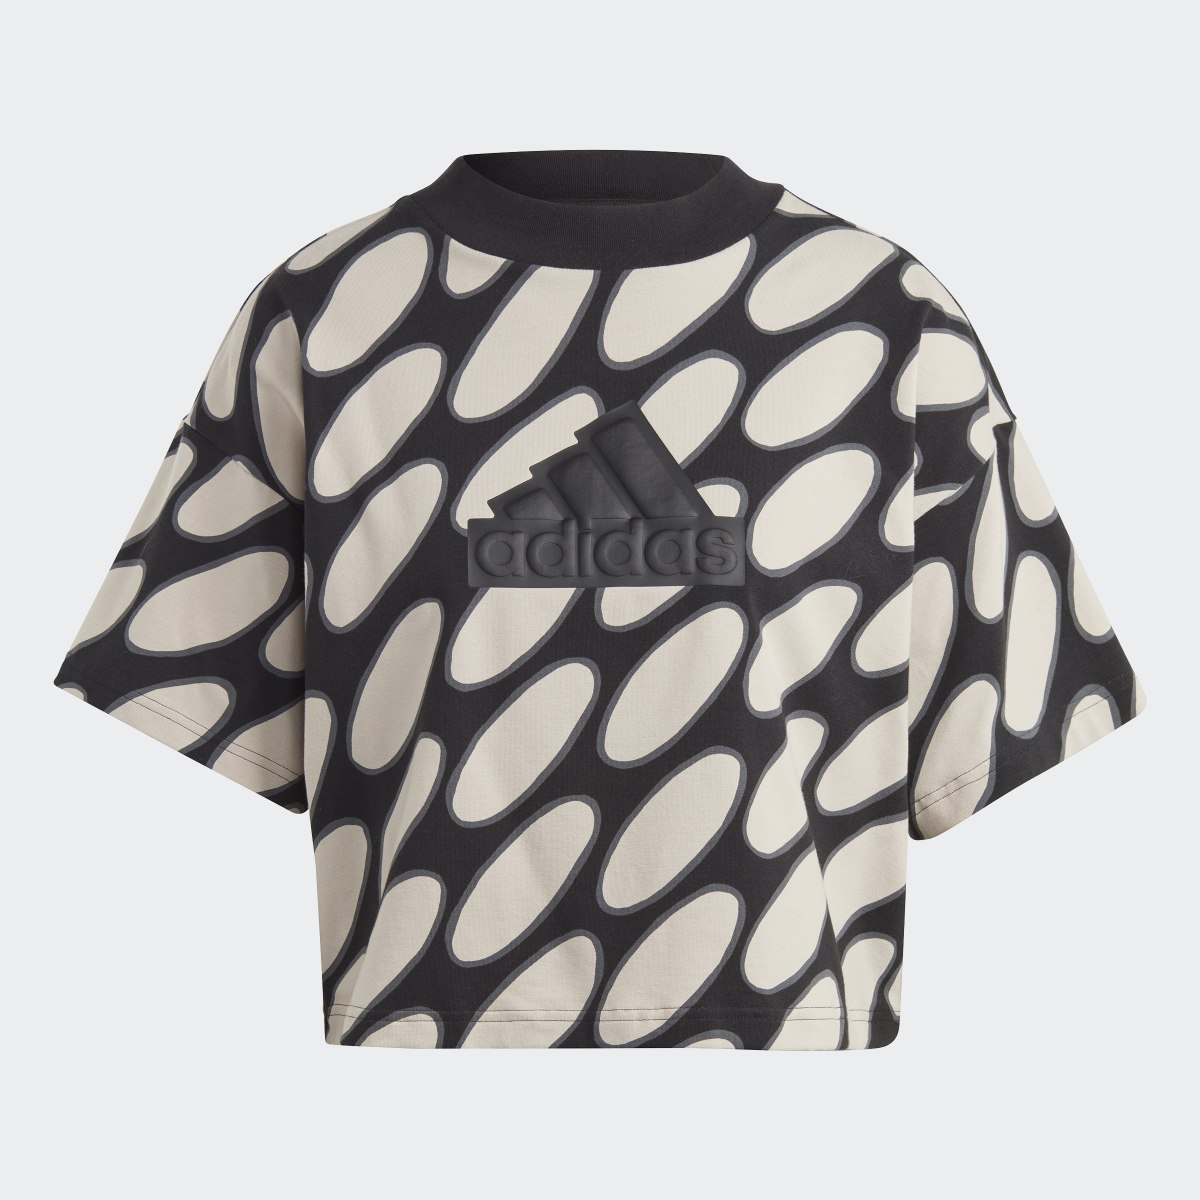 Adidas Marimekko Future Icons 3-Streifen T-Shirt. 6